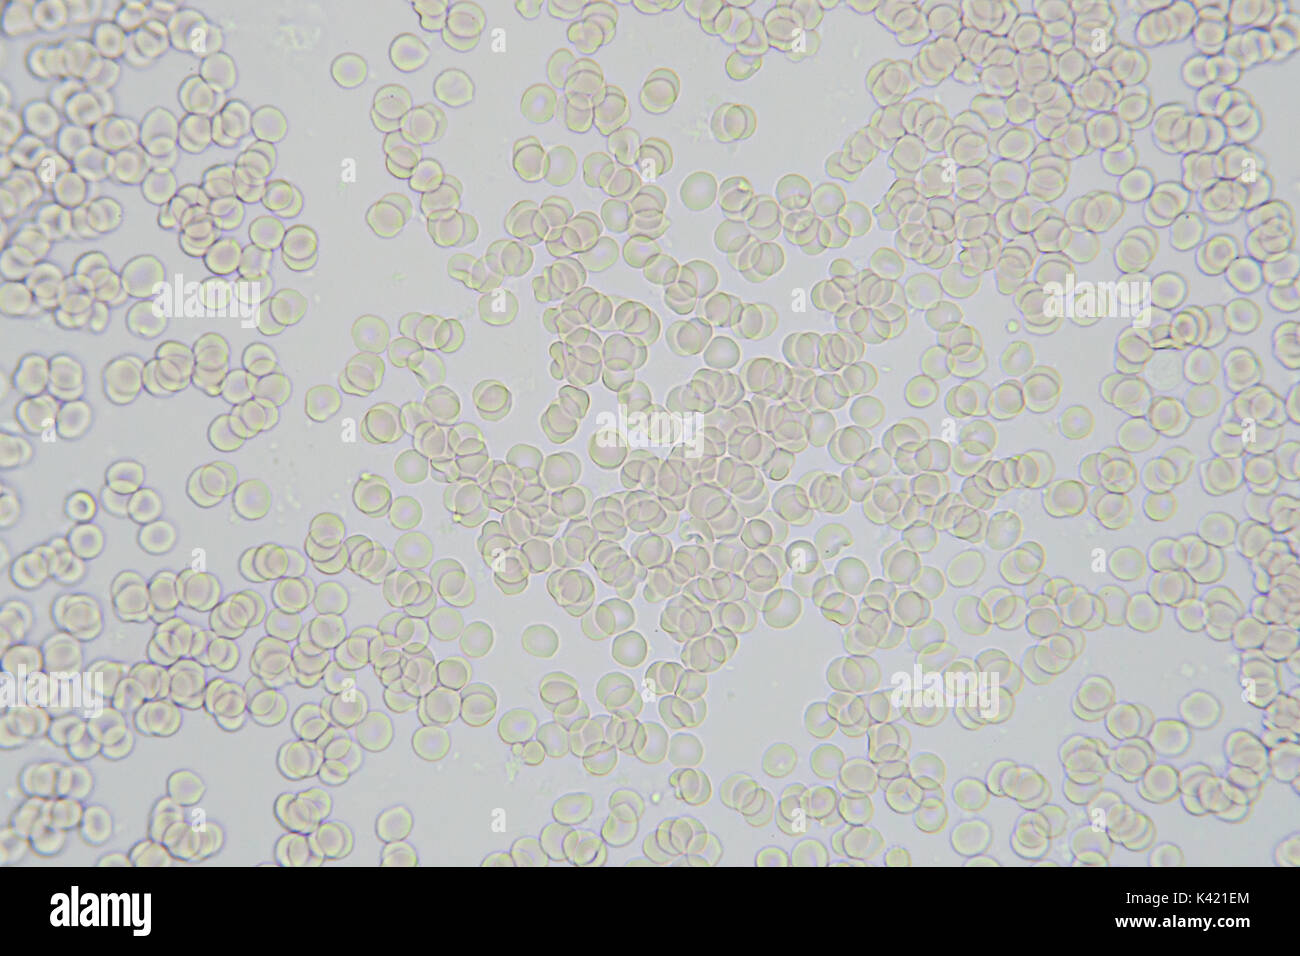 Les cellules de sang image microscopique agrandissement x 400 Banque D'Images